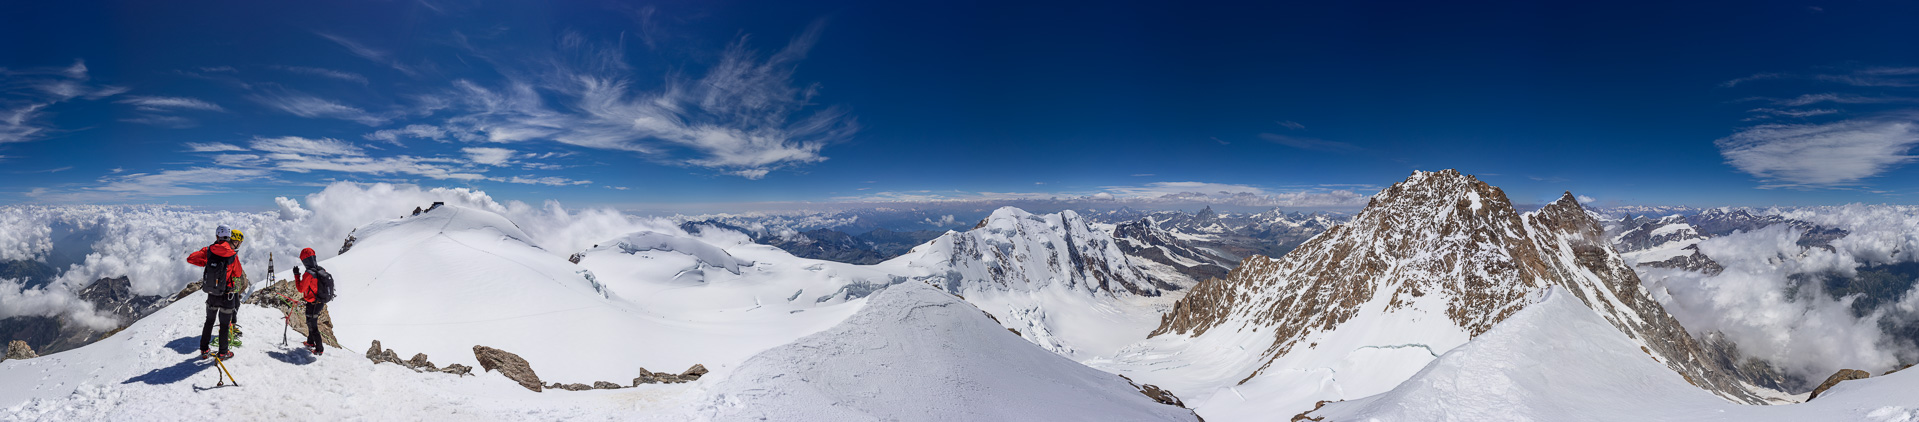 Phantastische Sicht über das Monte Rosa Plateau - wie klein auf einmal der gewaltige Liskamm wird.